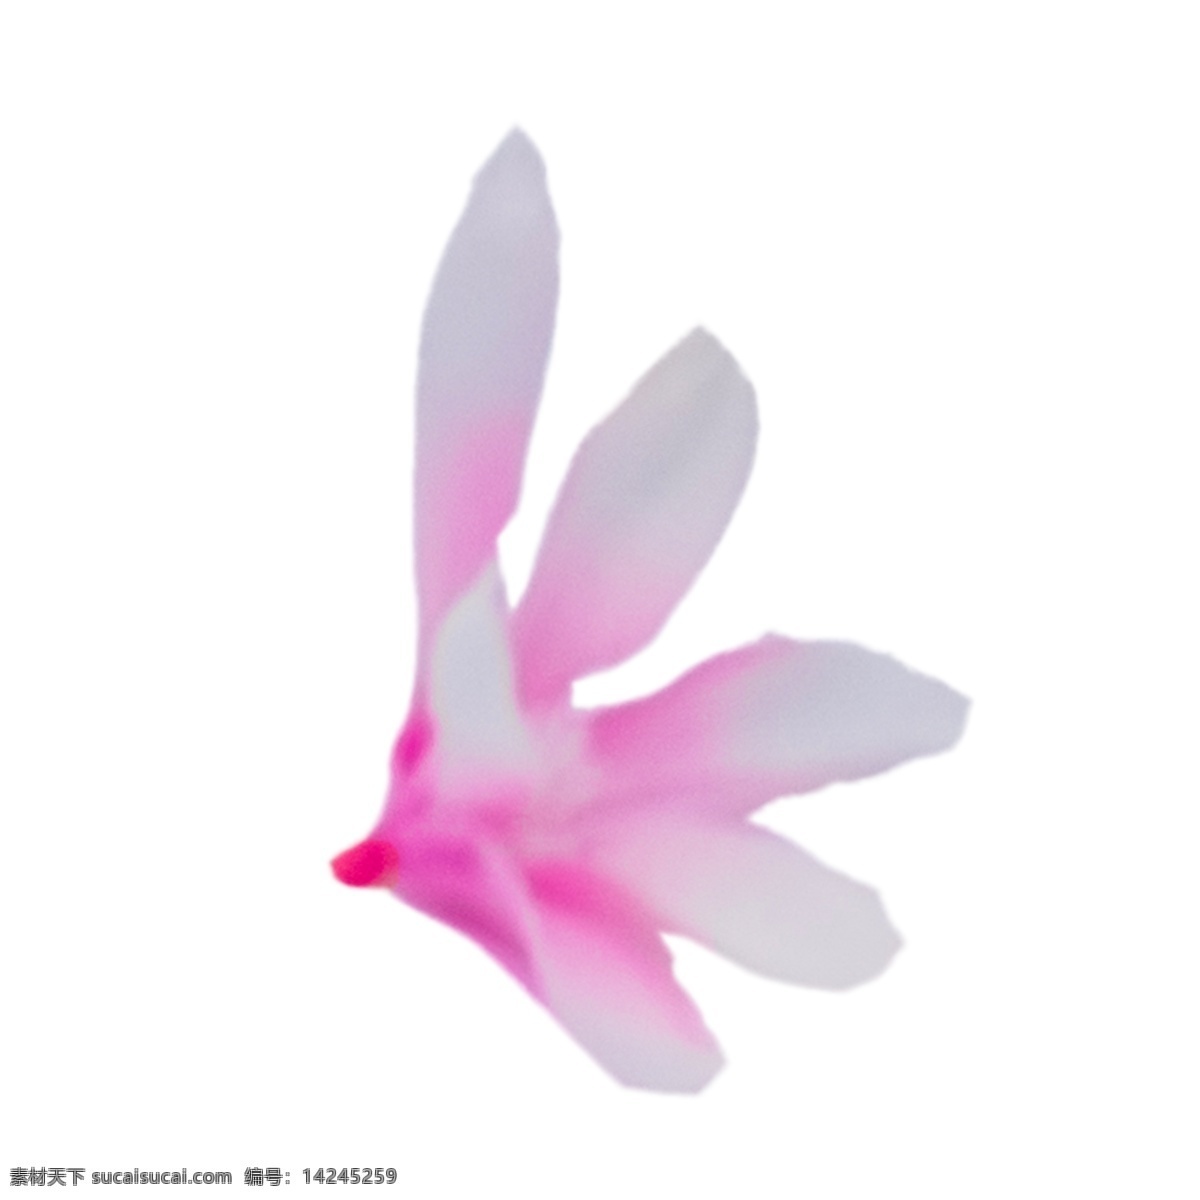 盛开 美丽 鲜花 粉色花朵 春天鲜花 鲜花装饰 实物 卡通 插图 创意卡通下载 png图下载